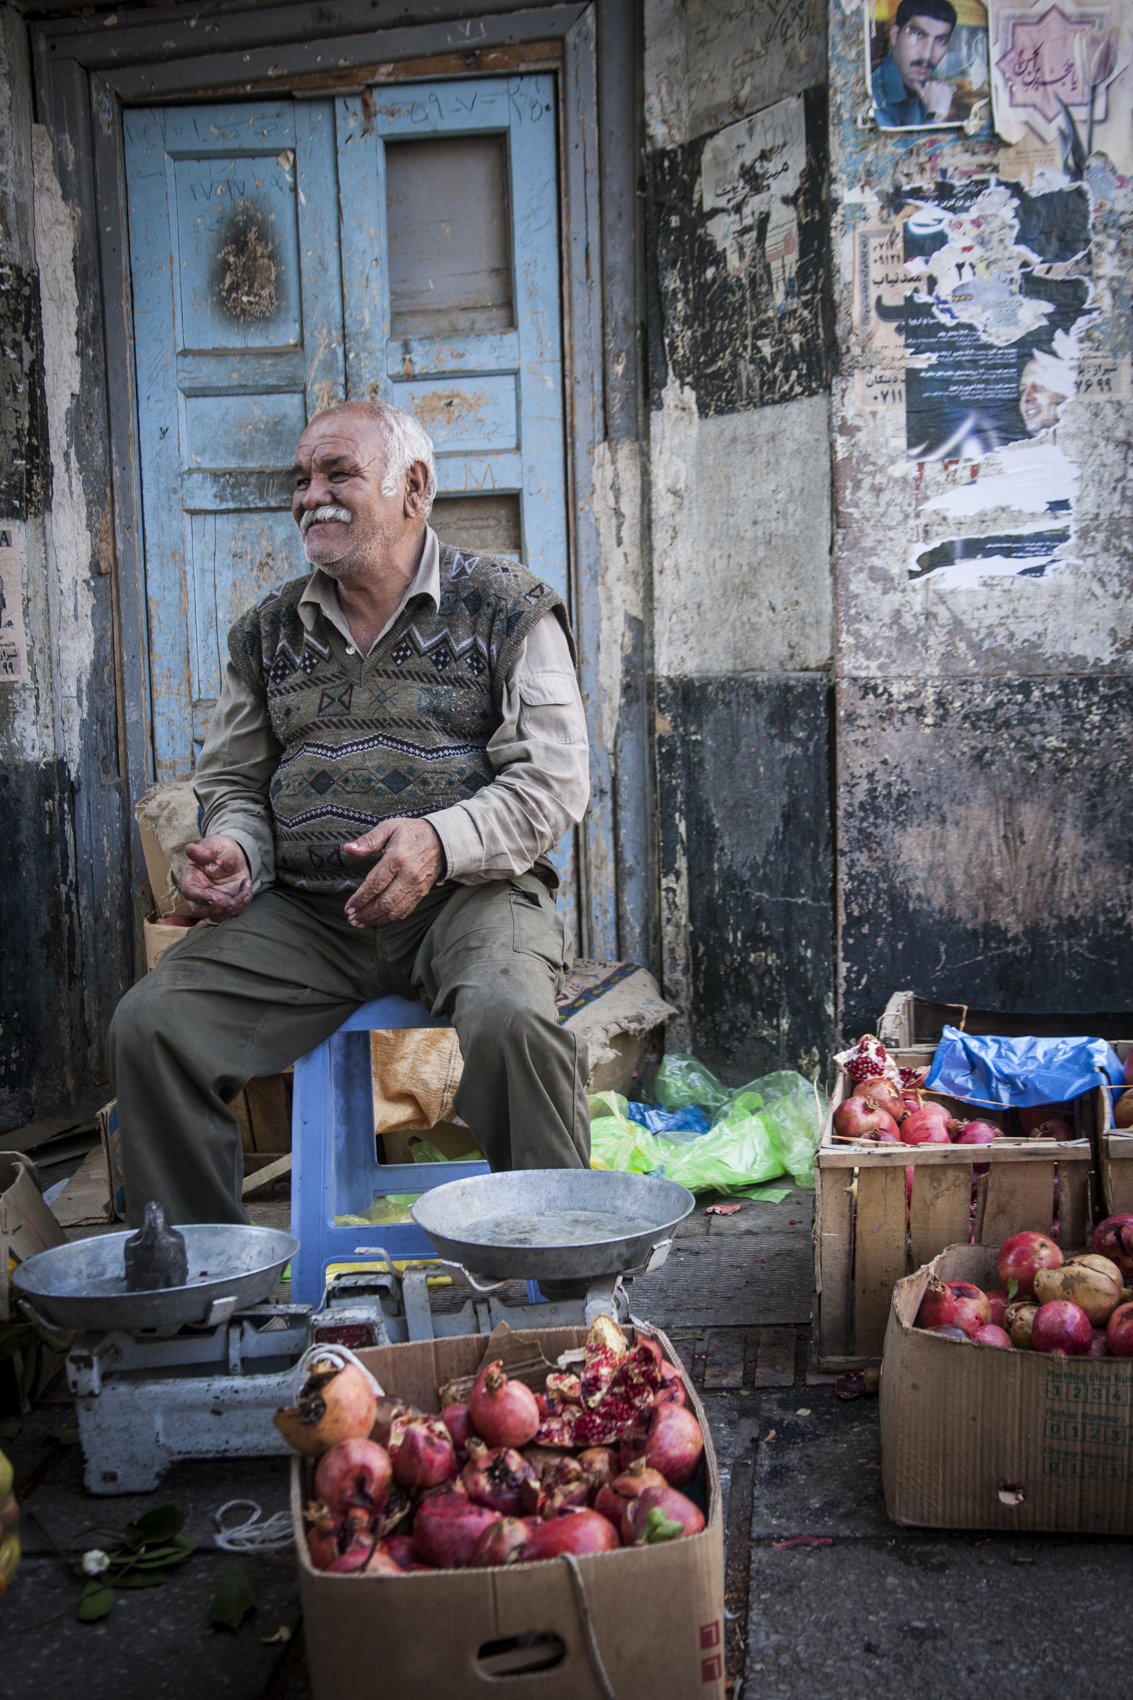 Street vendor, Shiraz